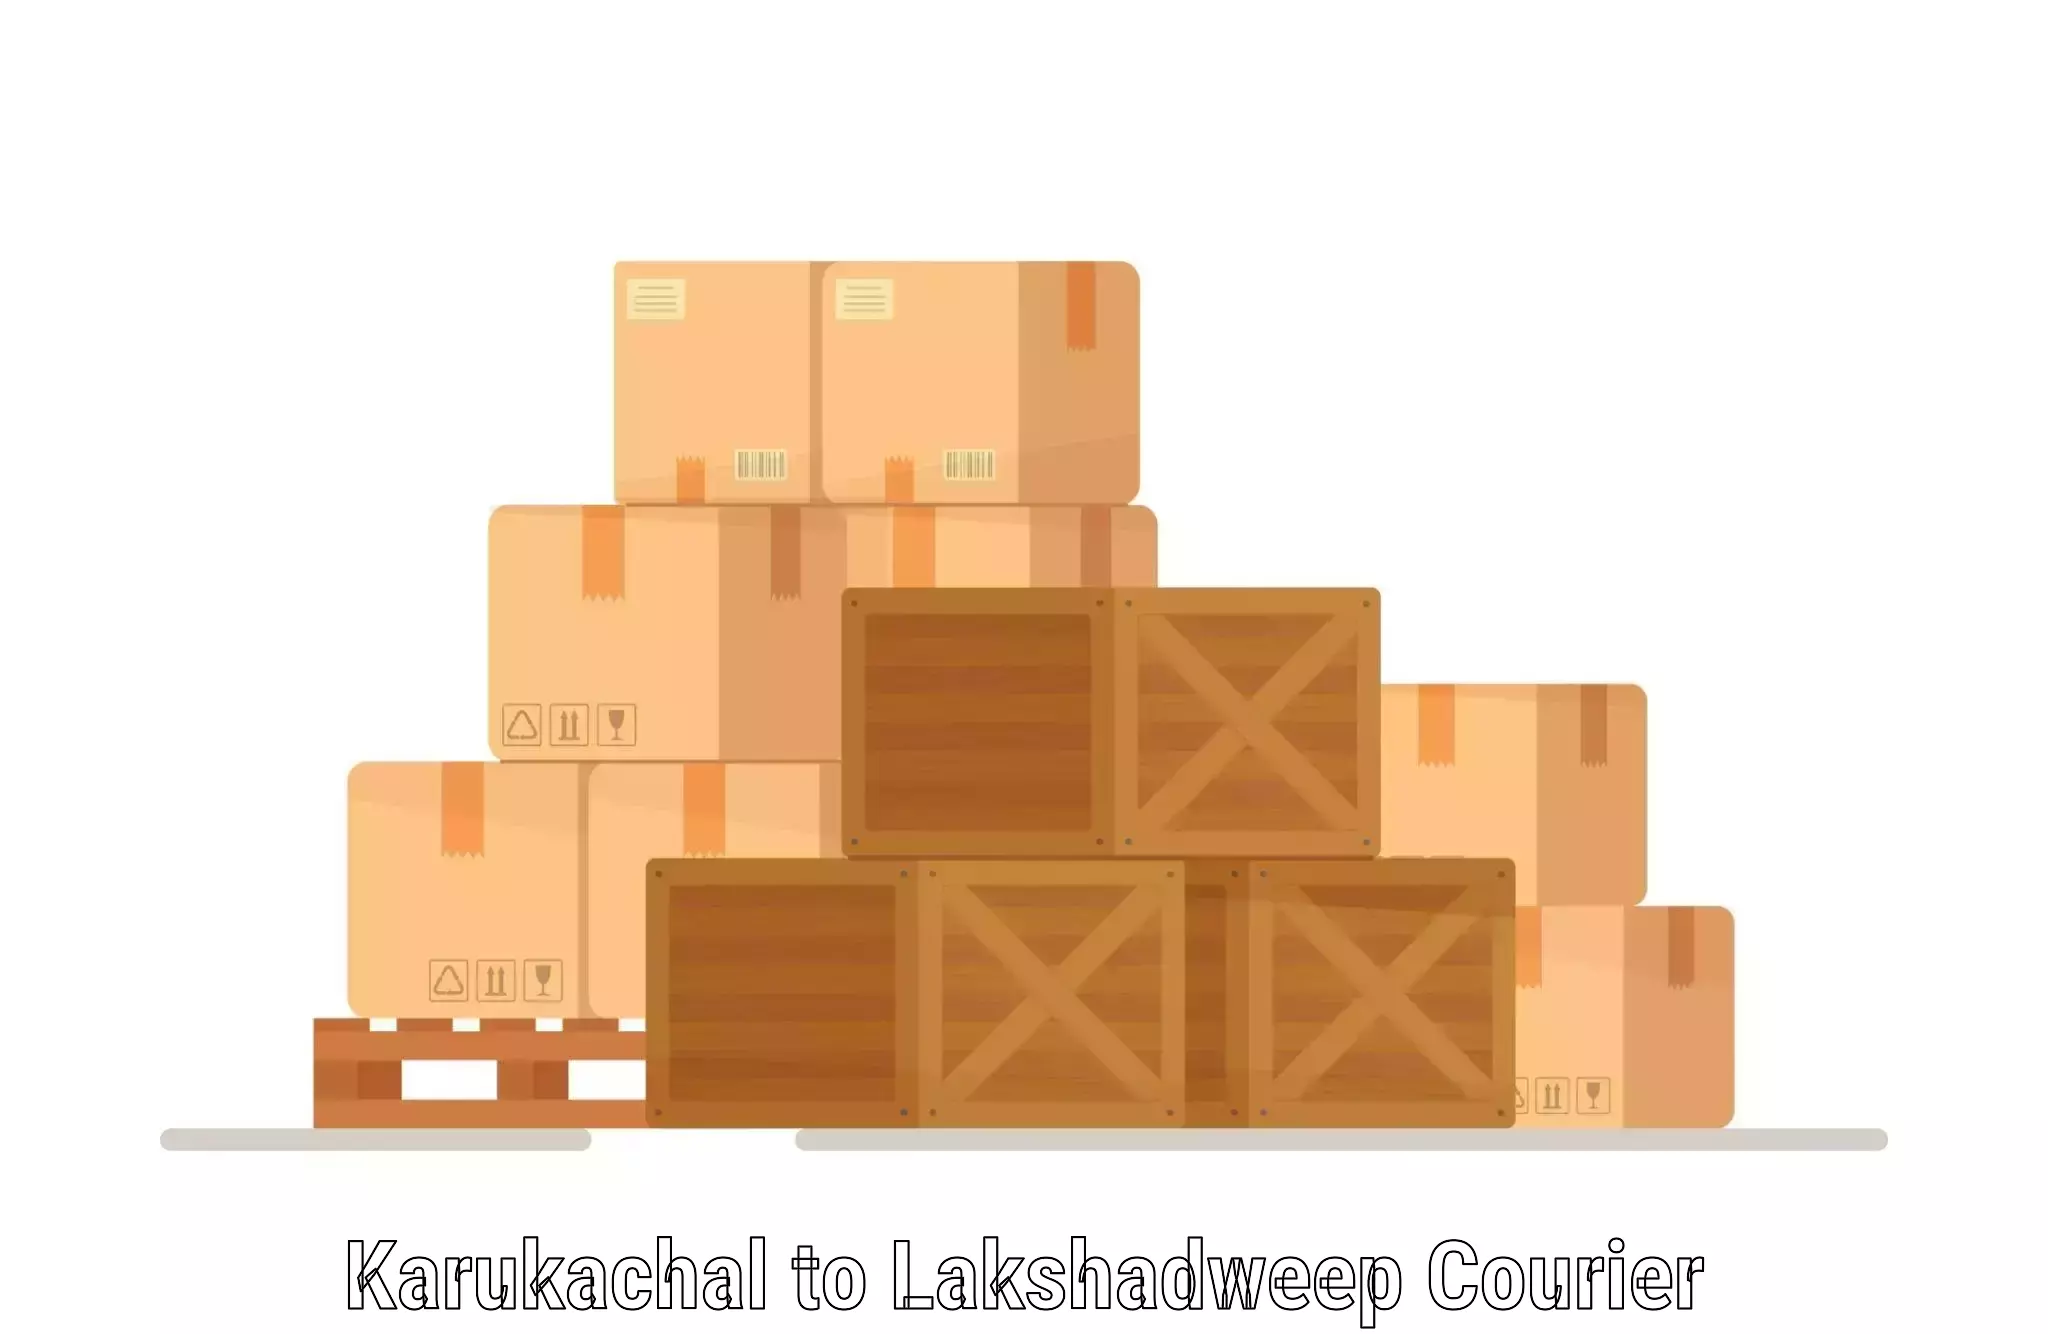 Multi-modal transport Karukachal to Lakshadweep